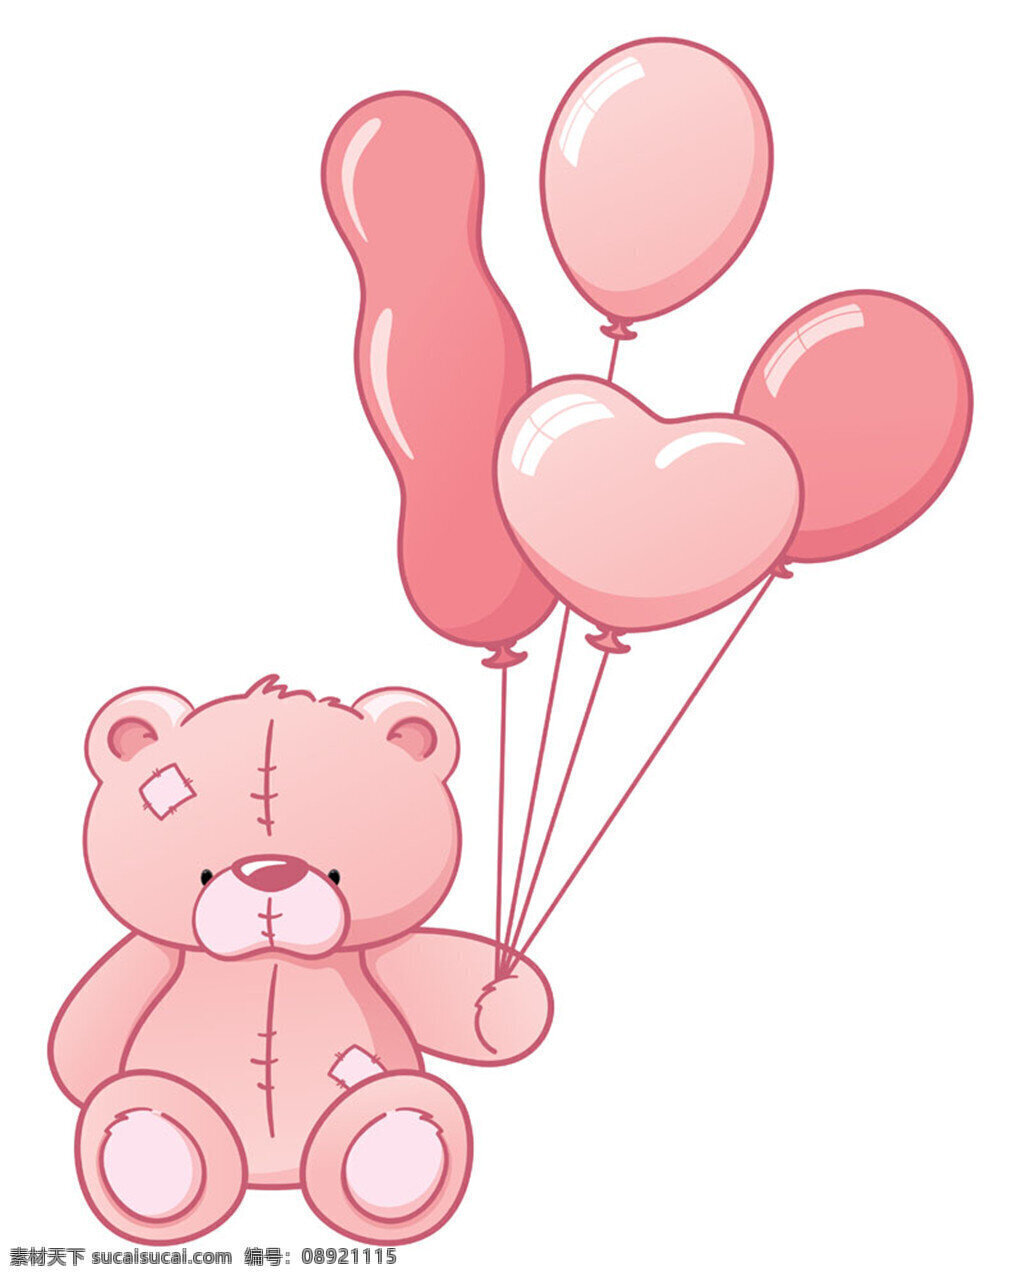 粉色 气球 小 熊 粉色气球 卡通熊 小熊 玩具熊 陆地动物 卡通动物 动物漫画 生活百科 矢量素材